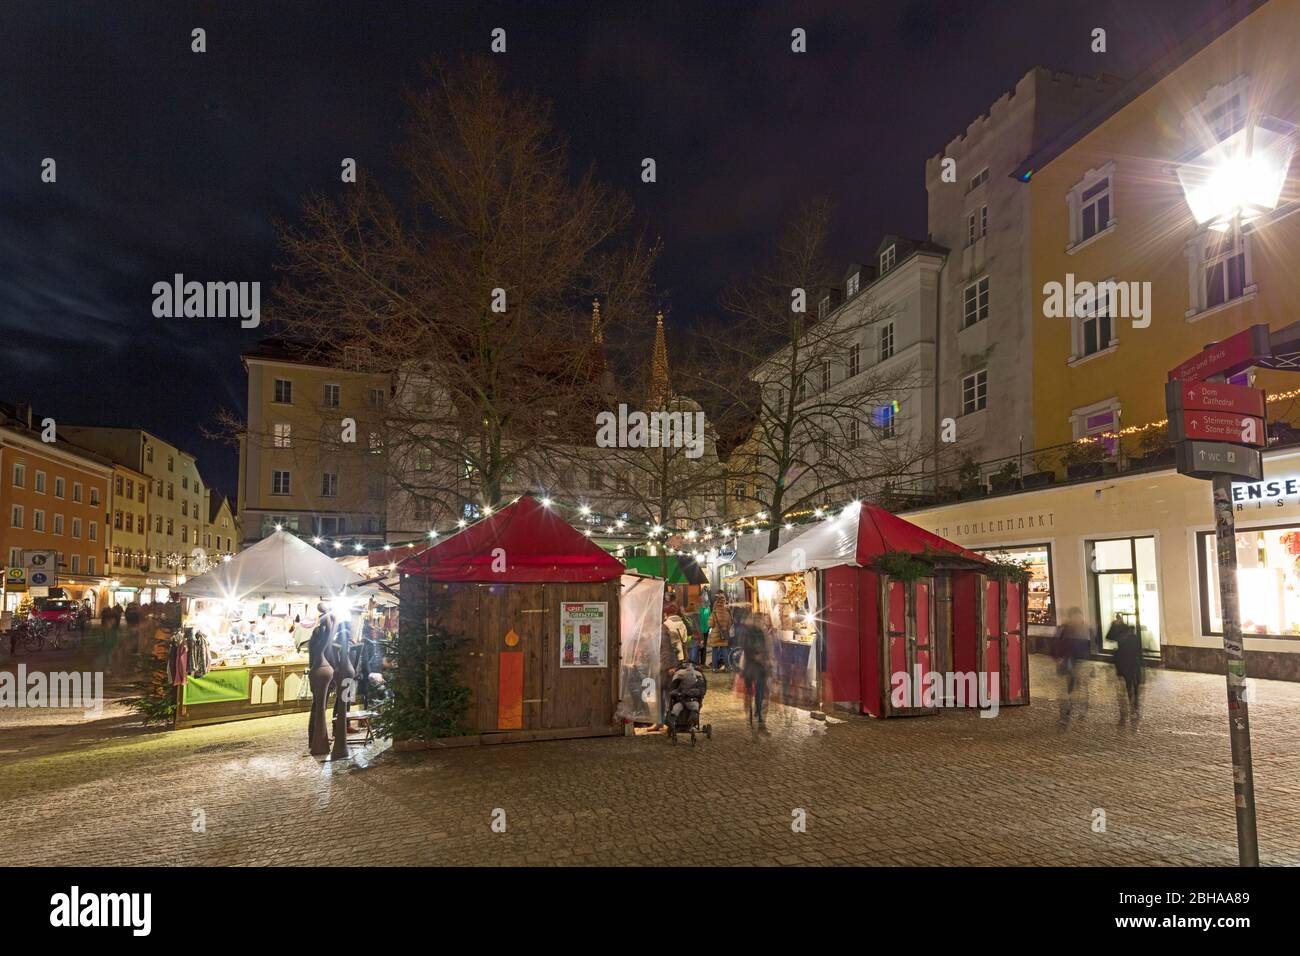 Christkindlmarkt, Kohlenmarkt, Weihnachten, Regensburg, Oberpfalz, Bayern, Deutschland, Europa, Stock Photo